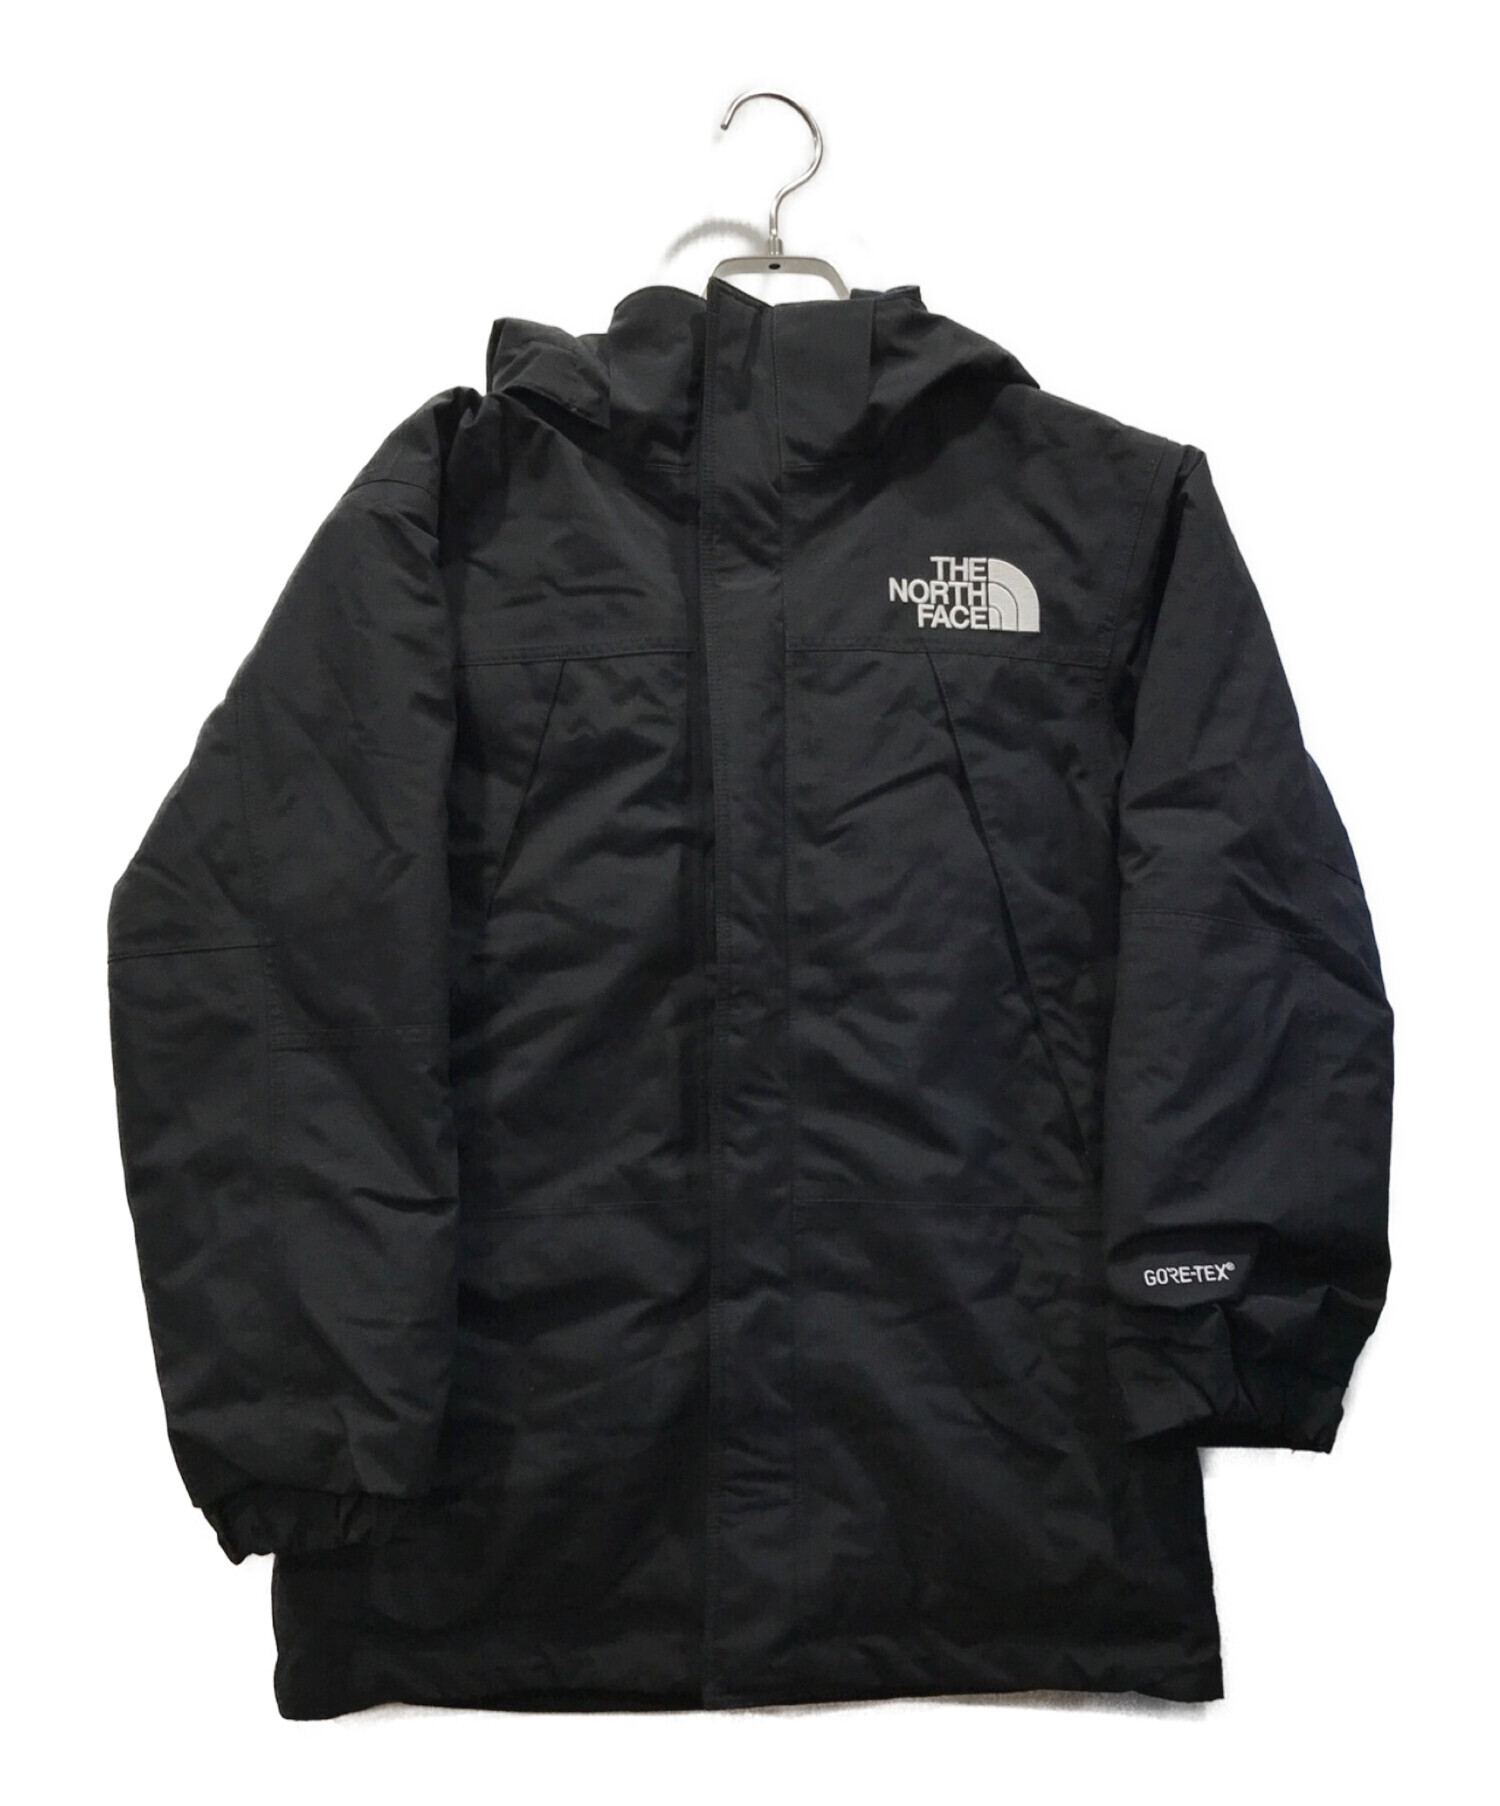 THE NORTH FACE (ザ ノース フェイス) Mountain Insulation Jacket ブラック サイズ:150cm